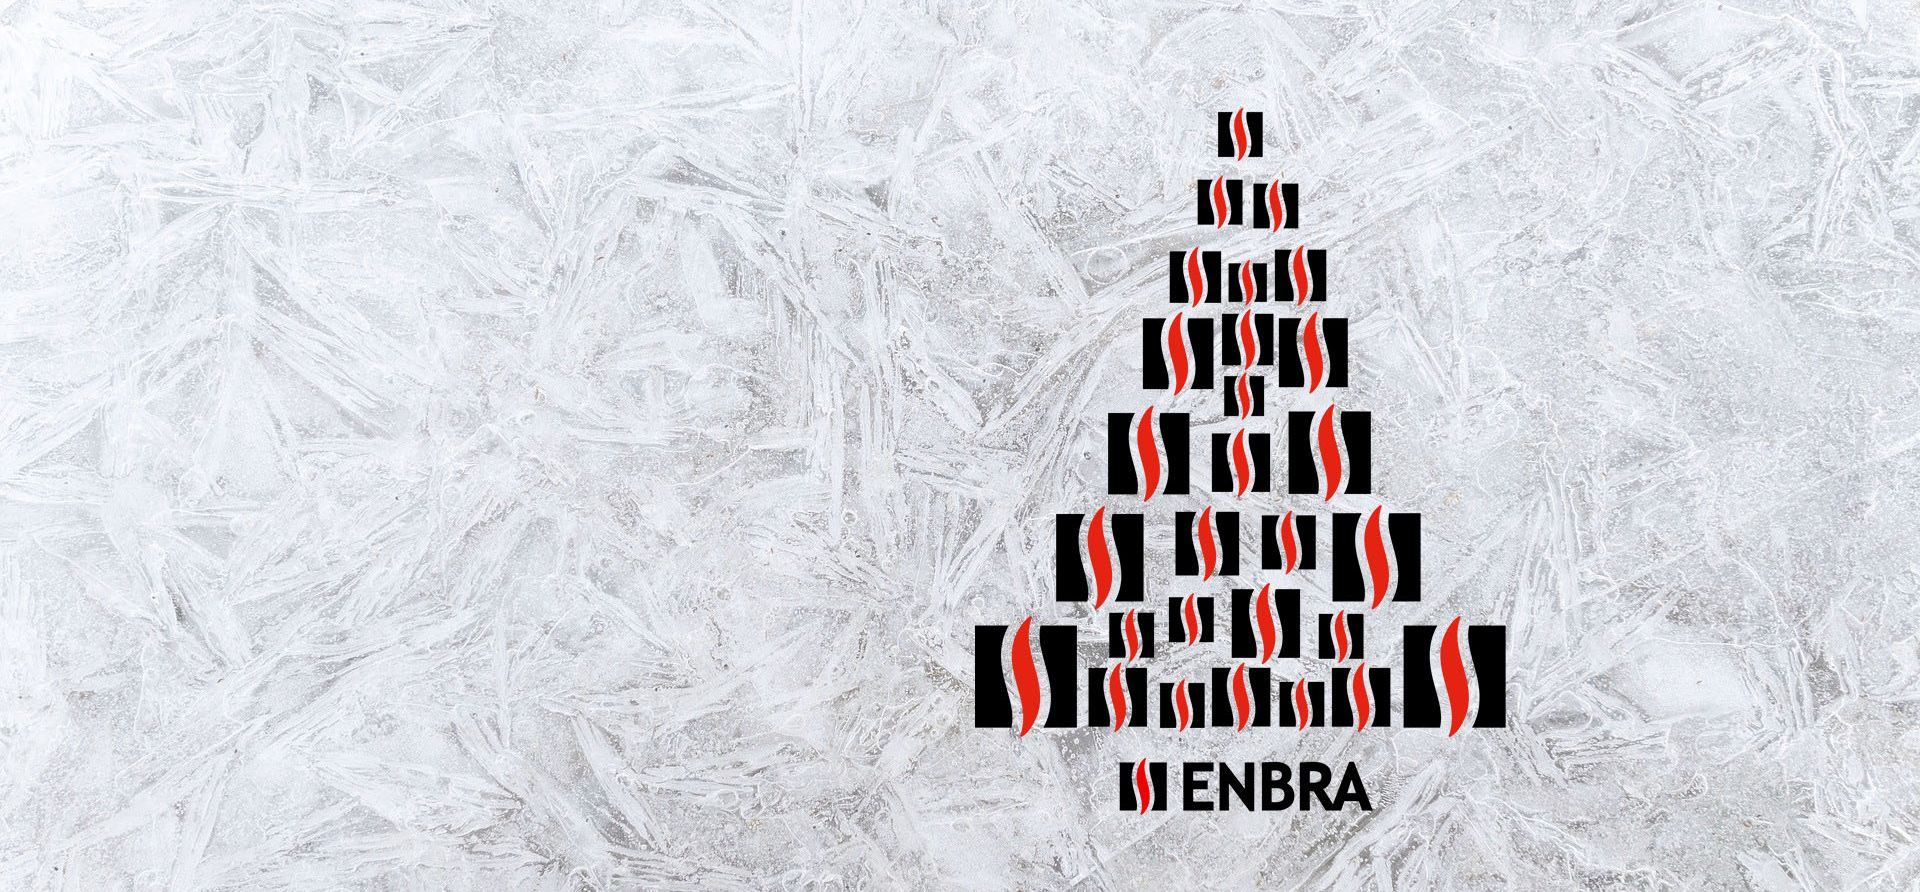 Krásne Vianoce vám praje ENBRA